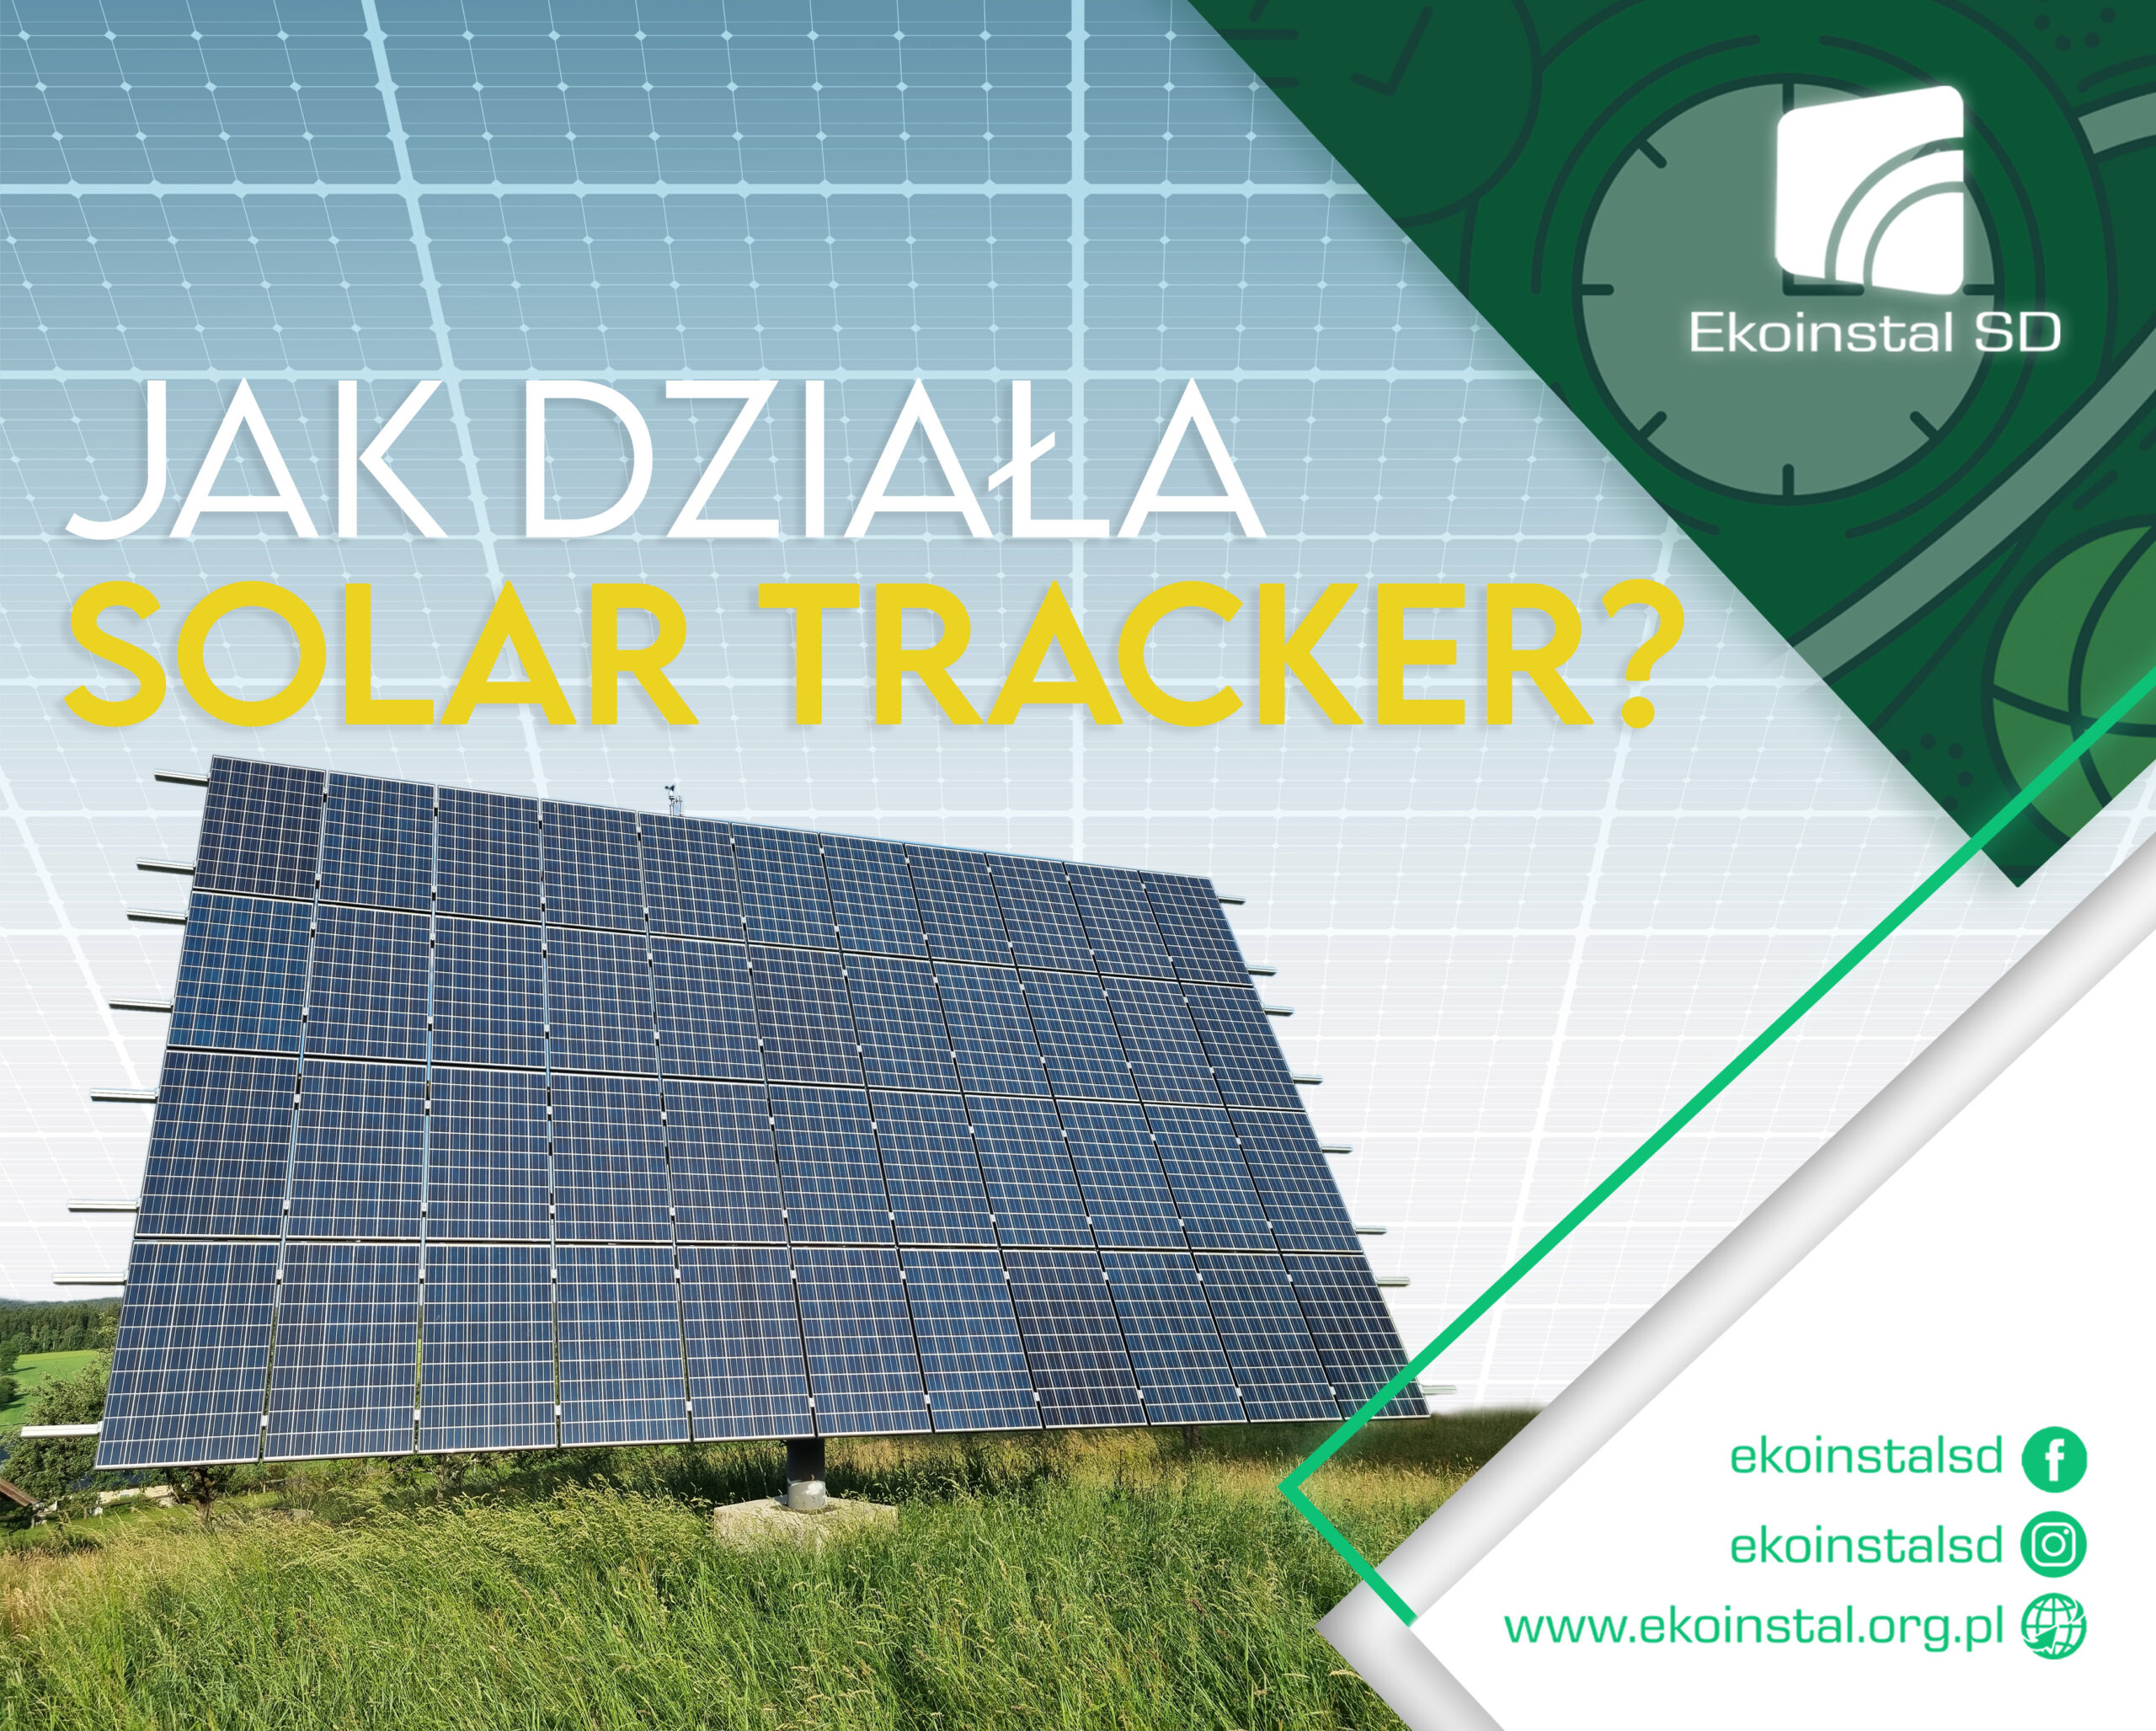 Jak działa Solar tracker?